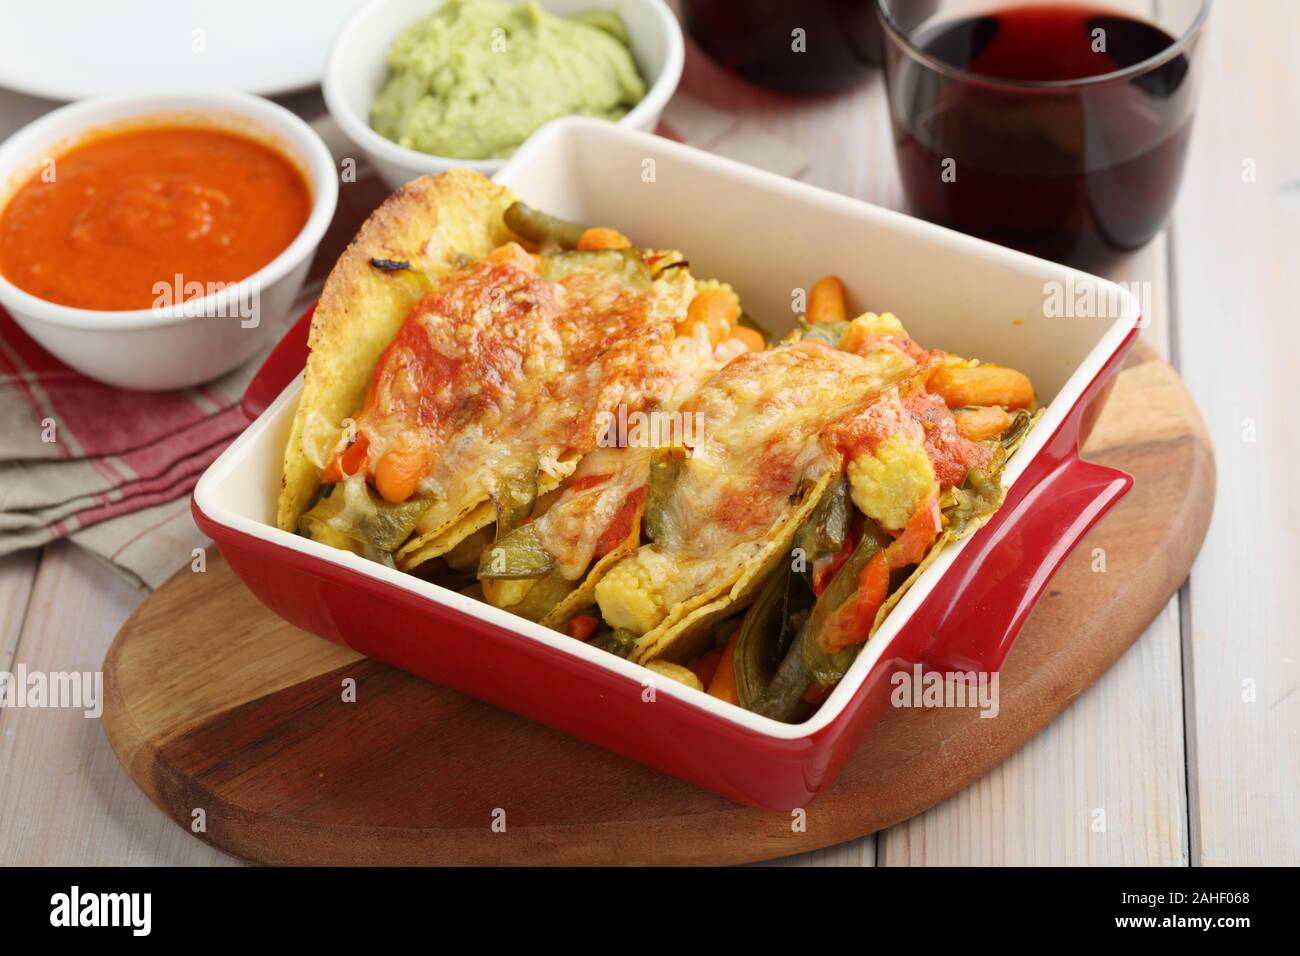 Tacos végétarien avec du fromage, de la guacamole, salsa, et de vin rouge sur une table rustique Banque D'Images